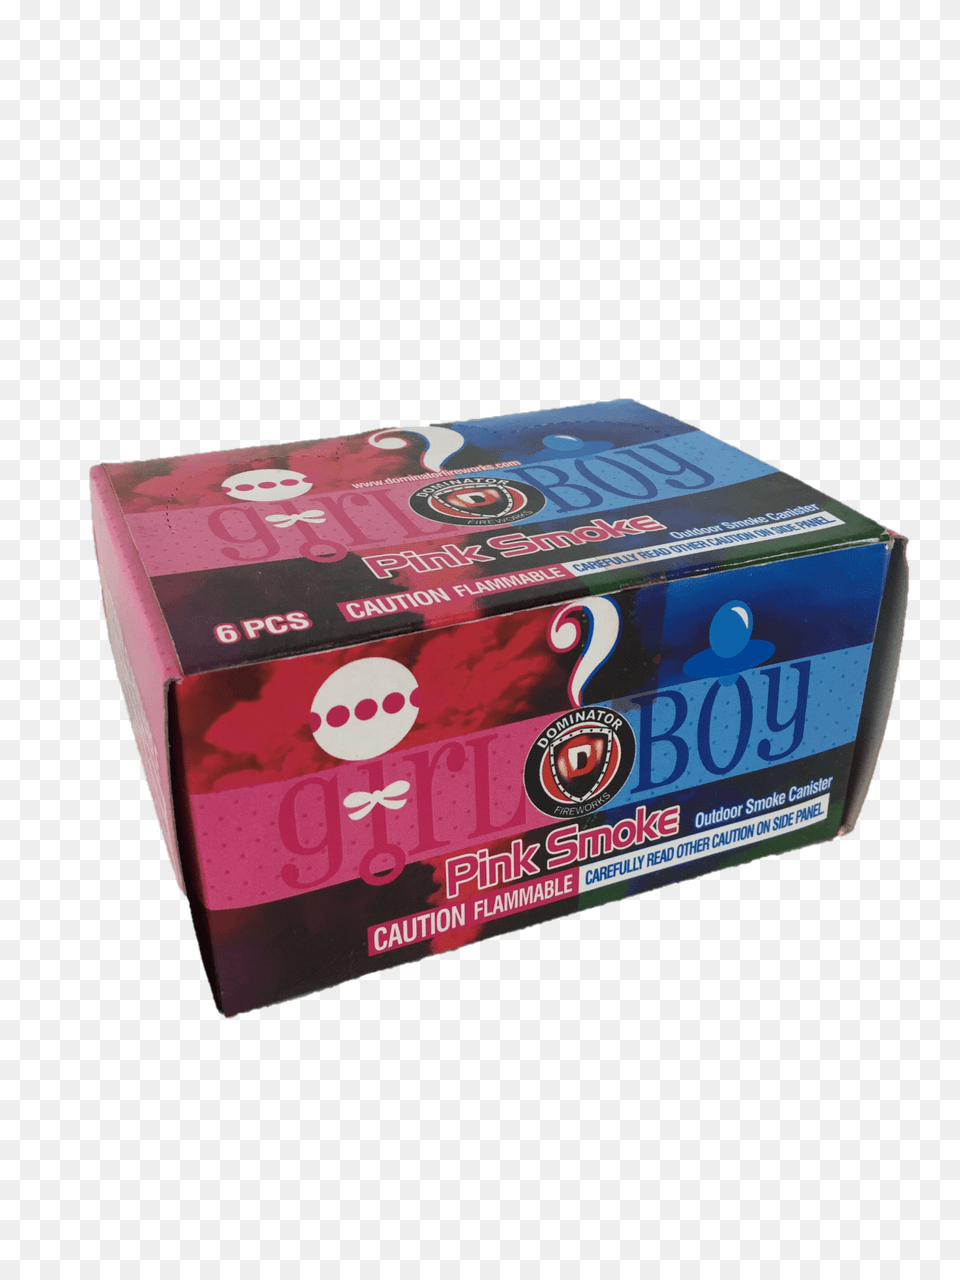 Pink Smoke Dm Carton, Box, Gum Png Image